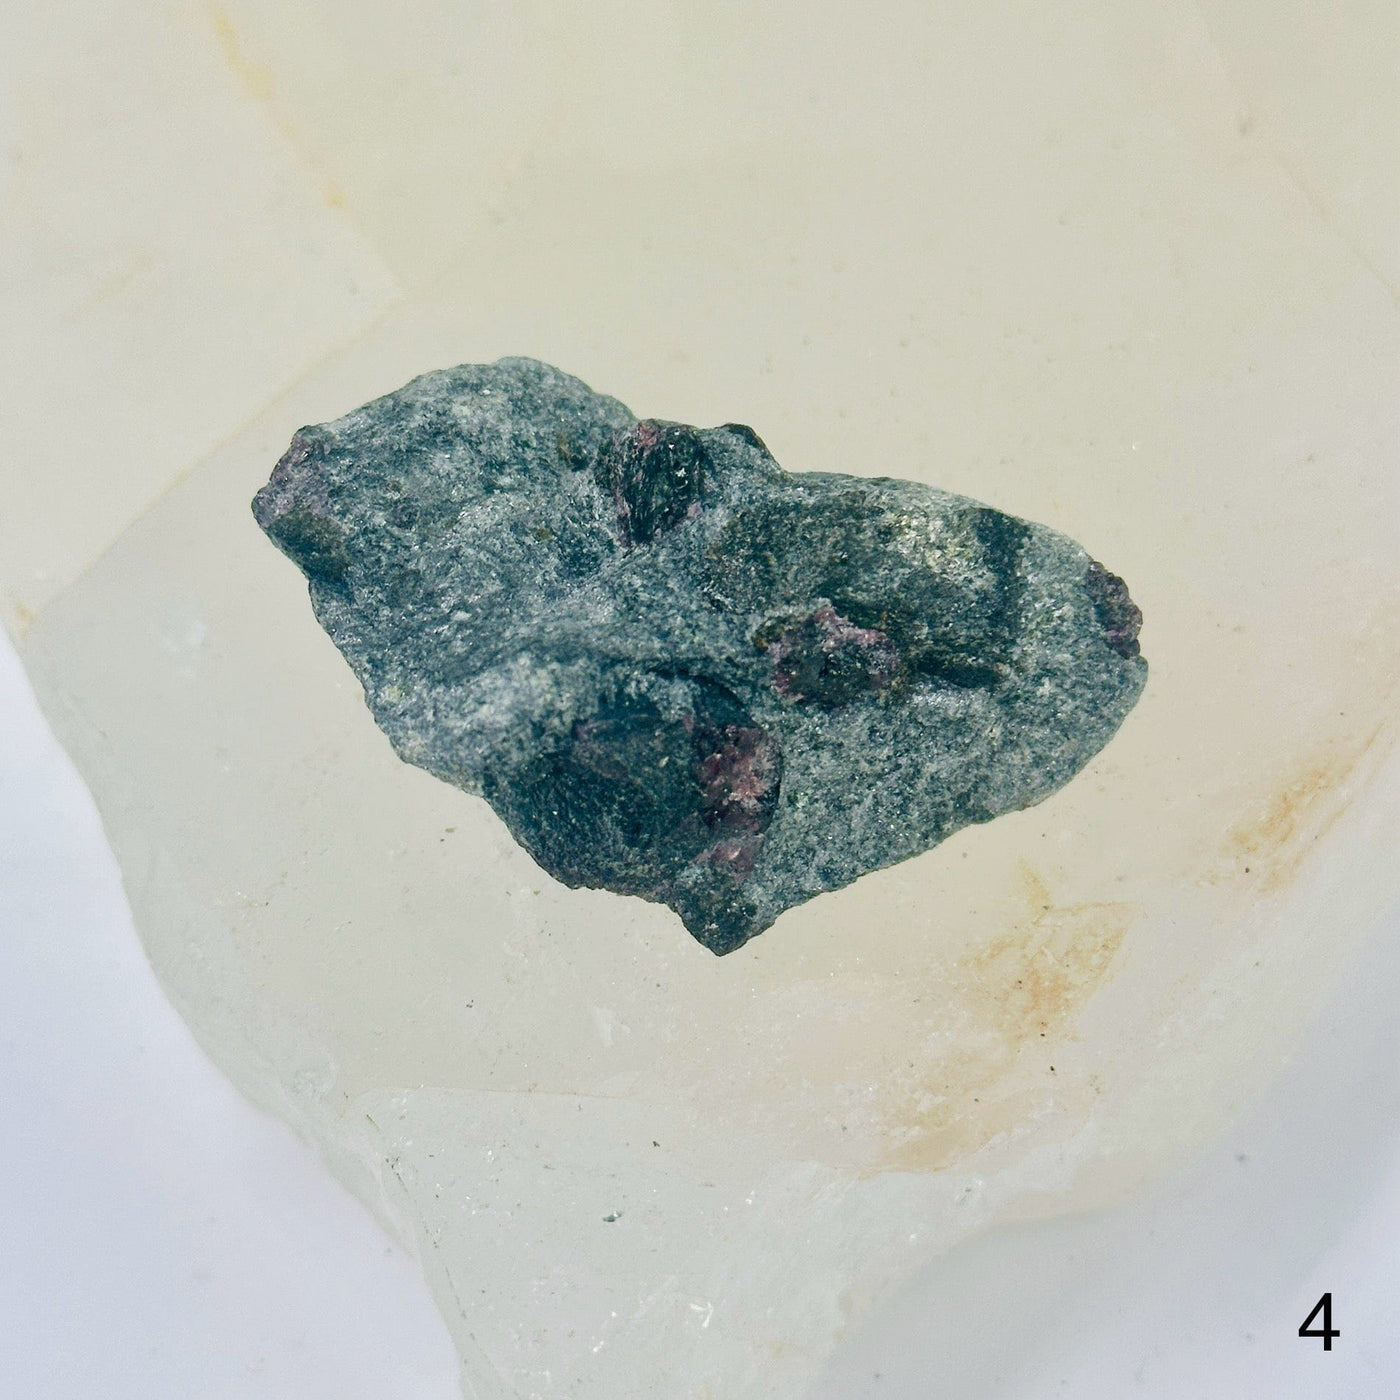  Garnet on Hematite Matrix - Natural Crystal - You Choose variant 4 labeled